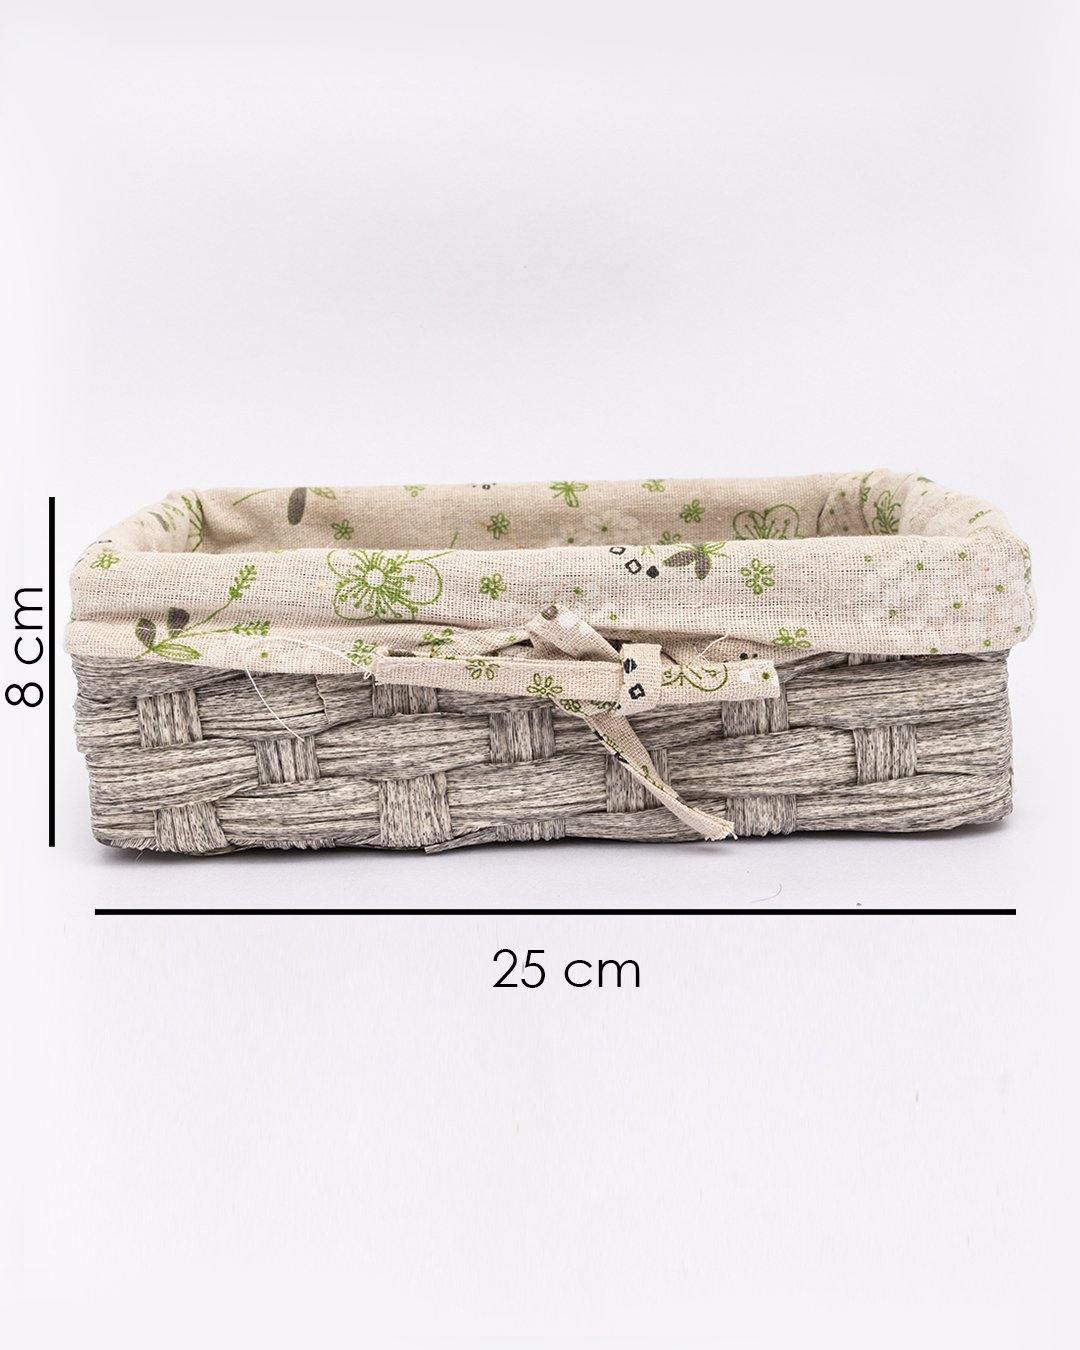 VON CASA Basket, Small, Ivory, Plastic